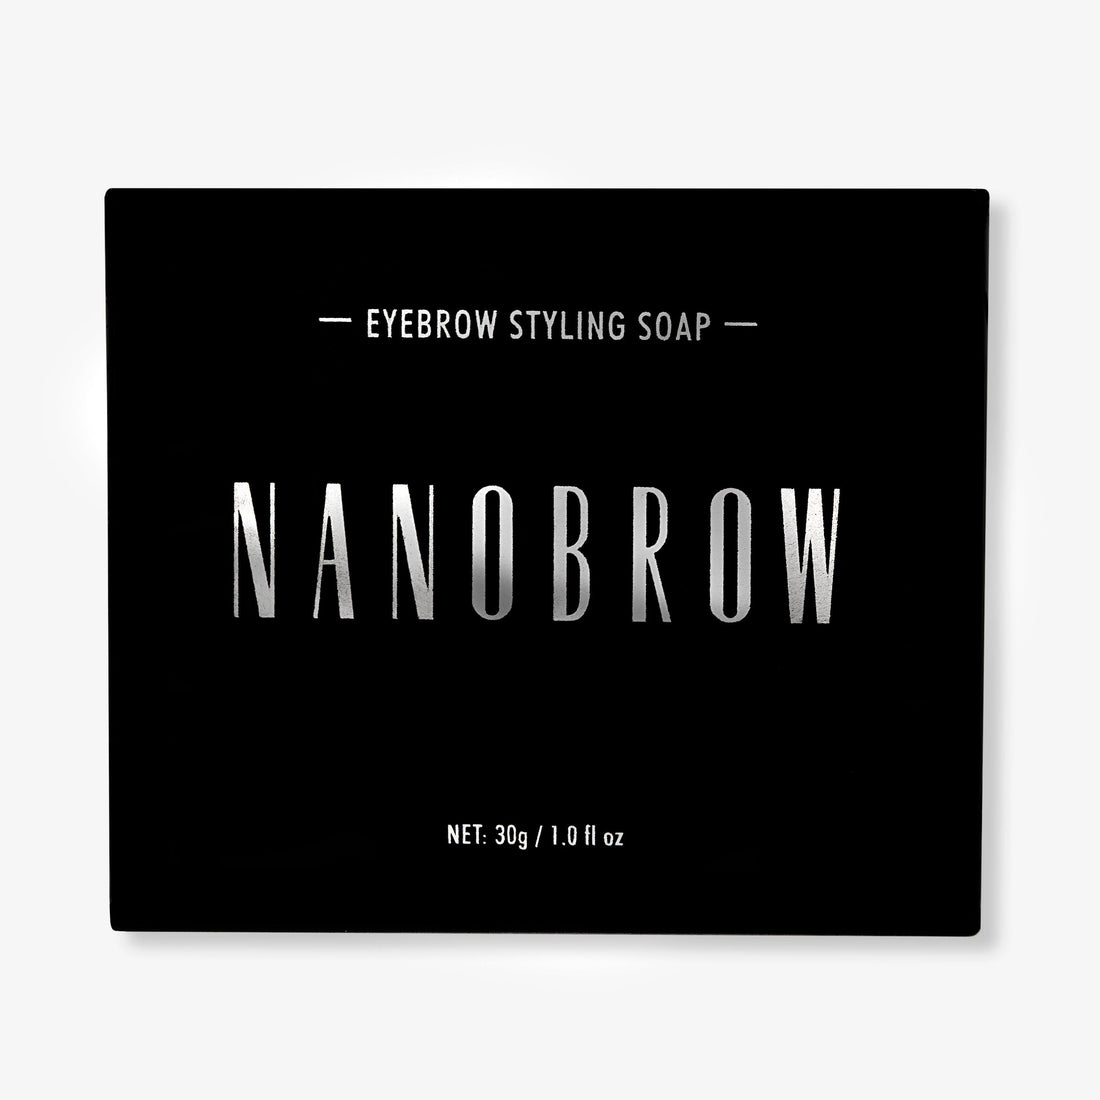 Nanobrow eyebrow styling soap - SerumGeeks